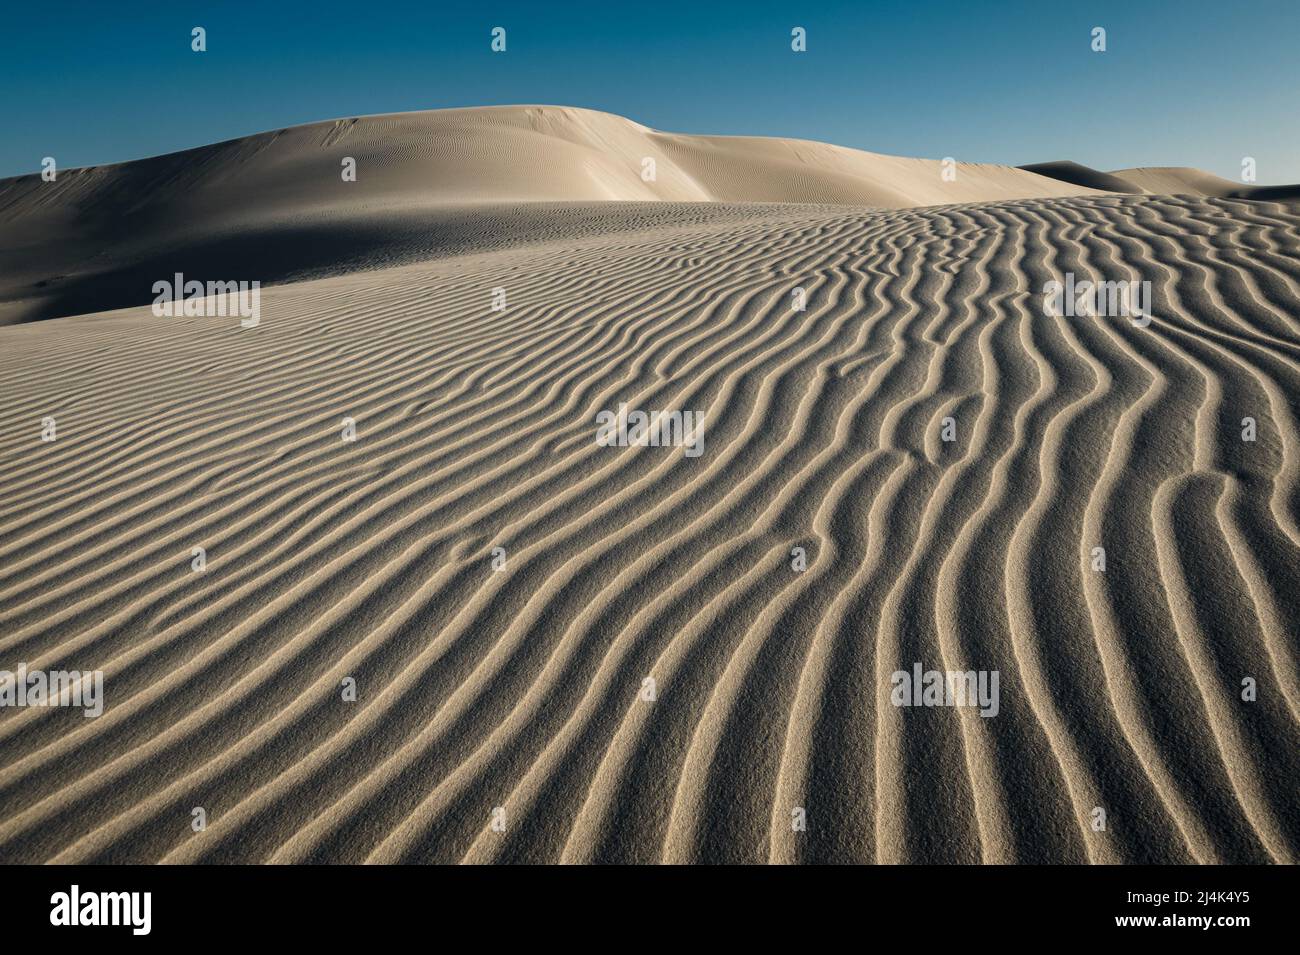 Sanddünen von Eucla sind ein sich ständig veränderndes Kunstwerk der Natur. Stockfoto